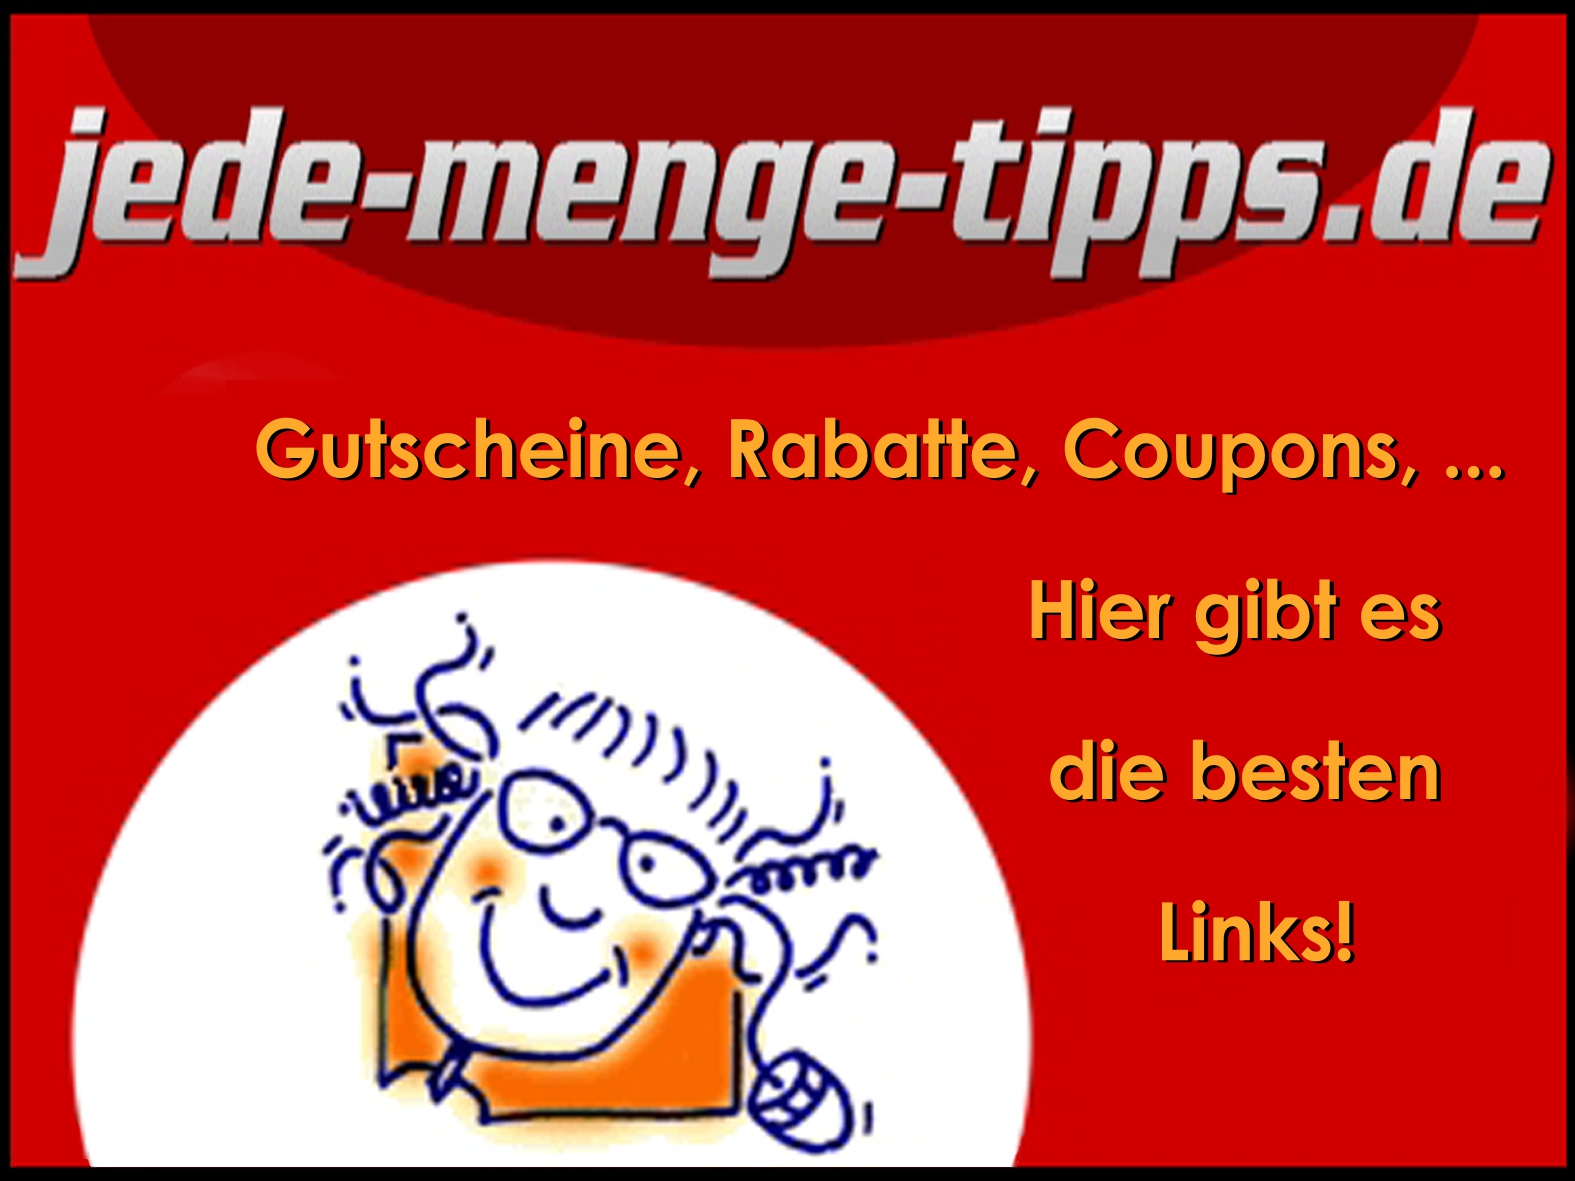 www.jede-menge-tipps.de